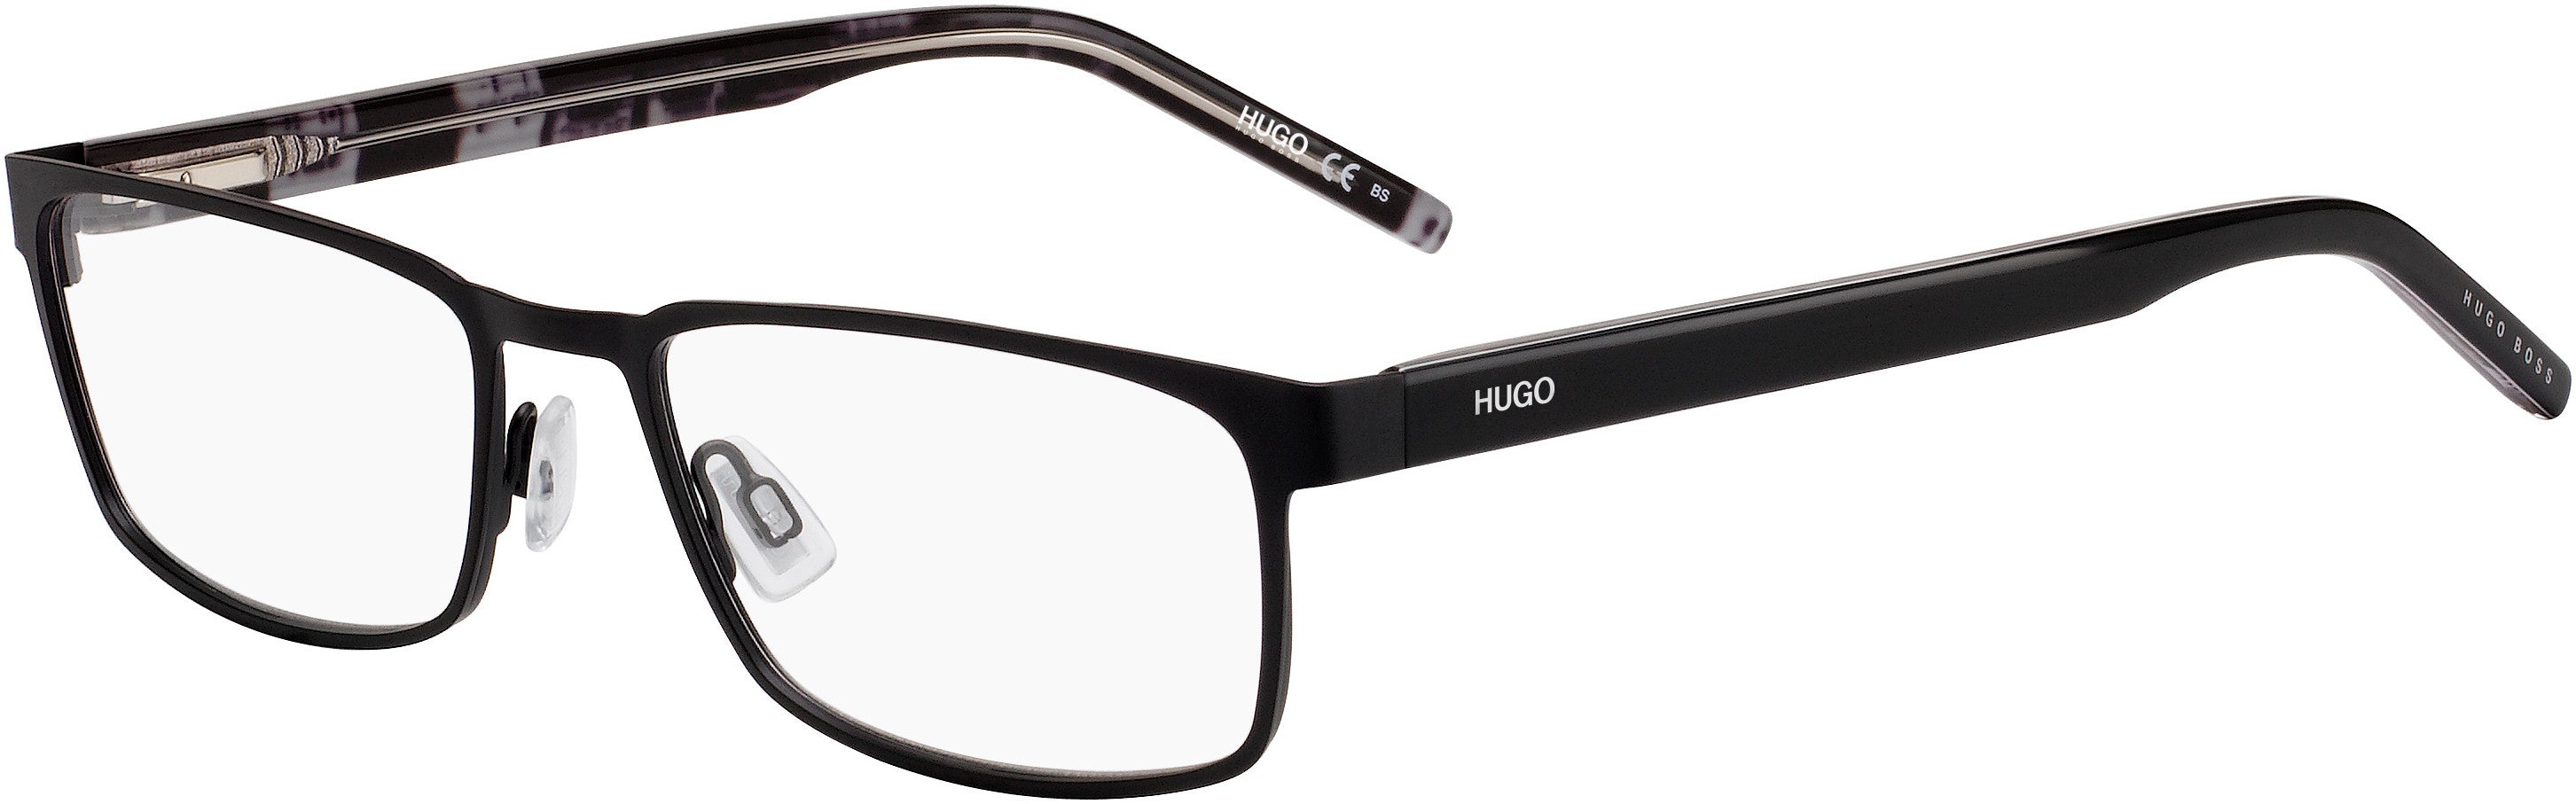 Hugo (hug) Hugo 1075 Rectangular Eyeglasses 0003-0003  Matte Black (00 Demo Lens)